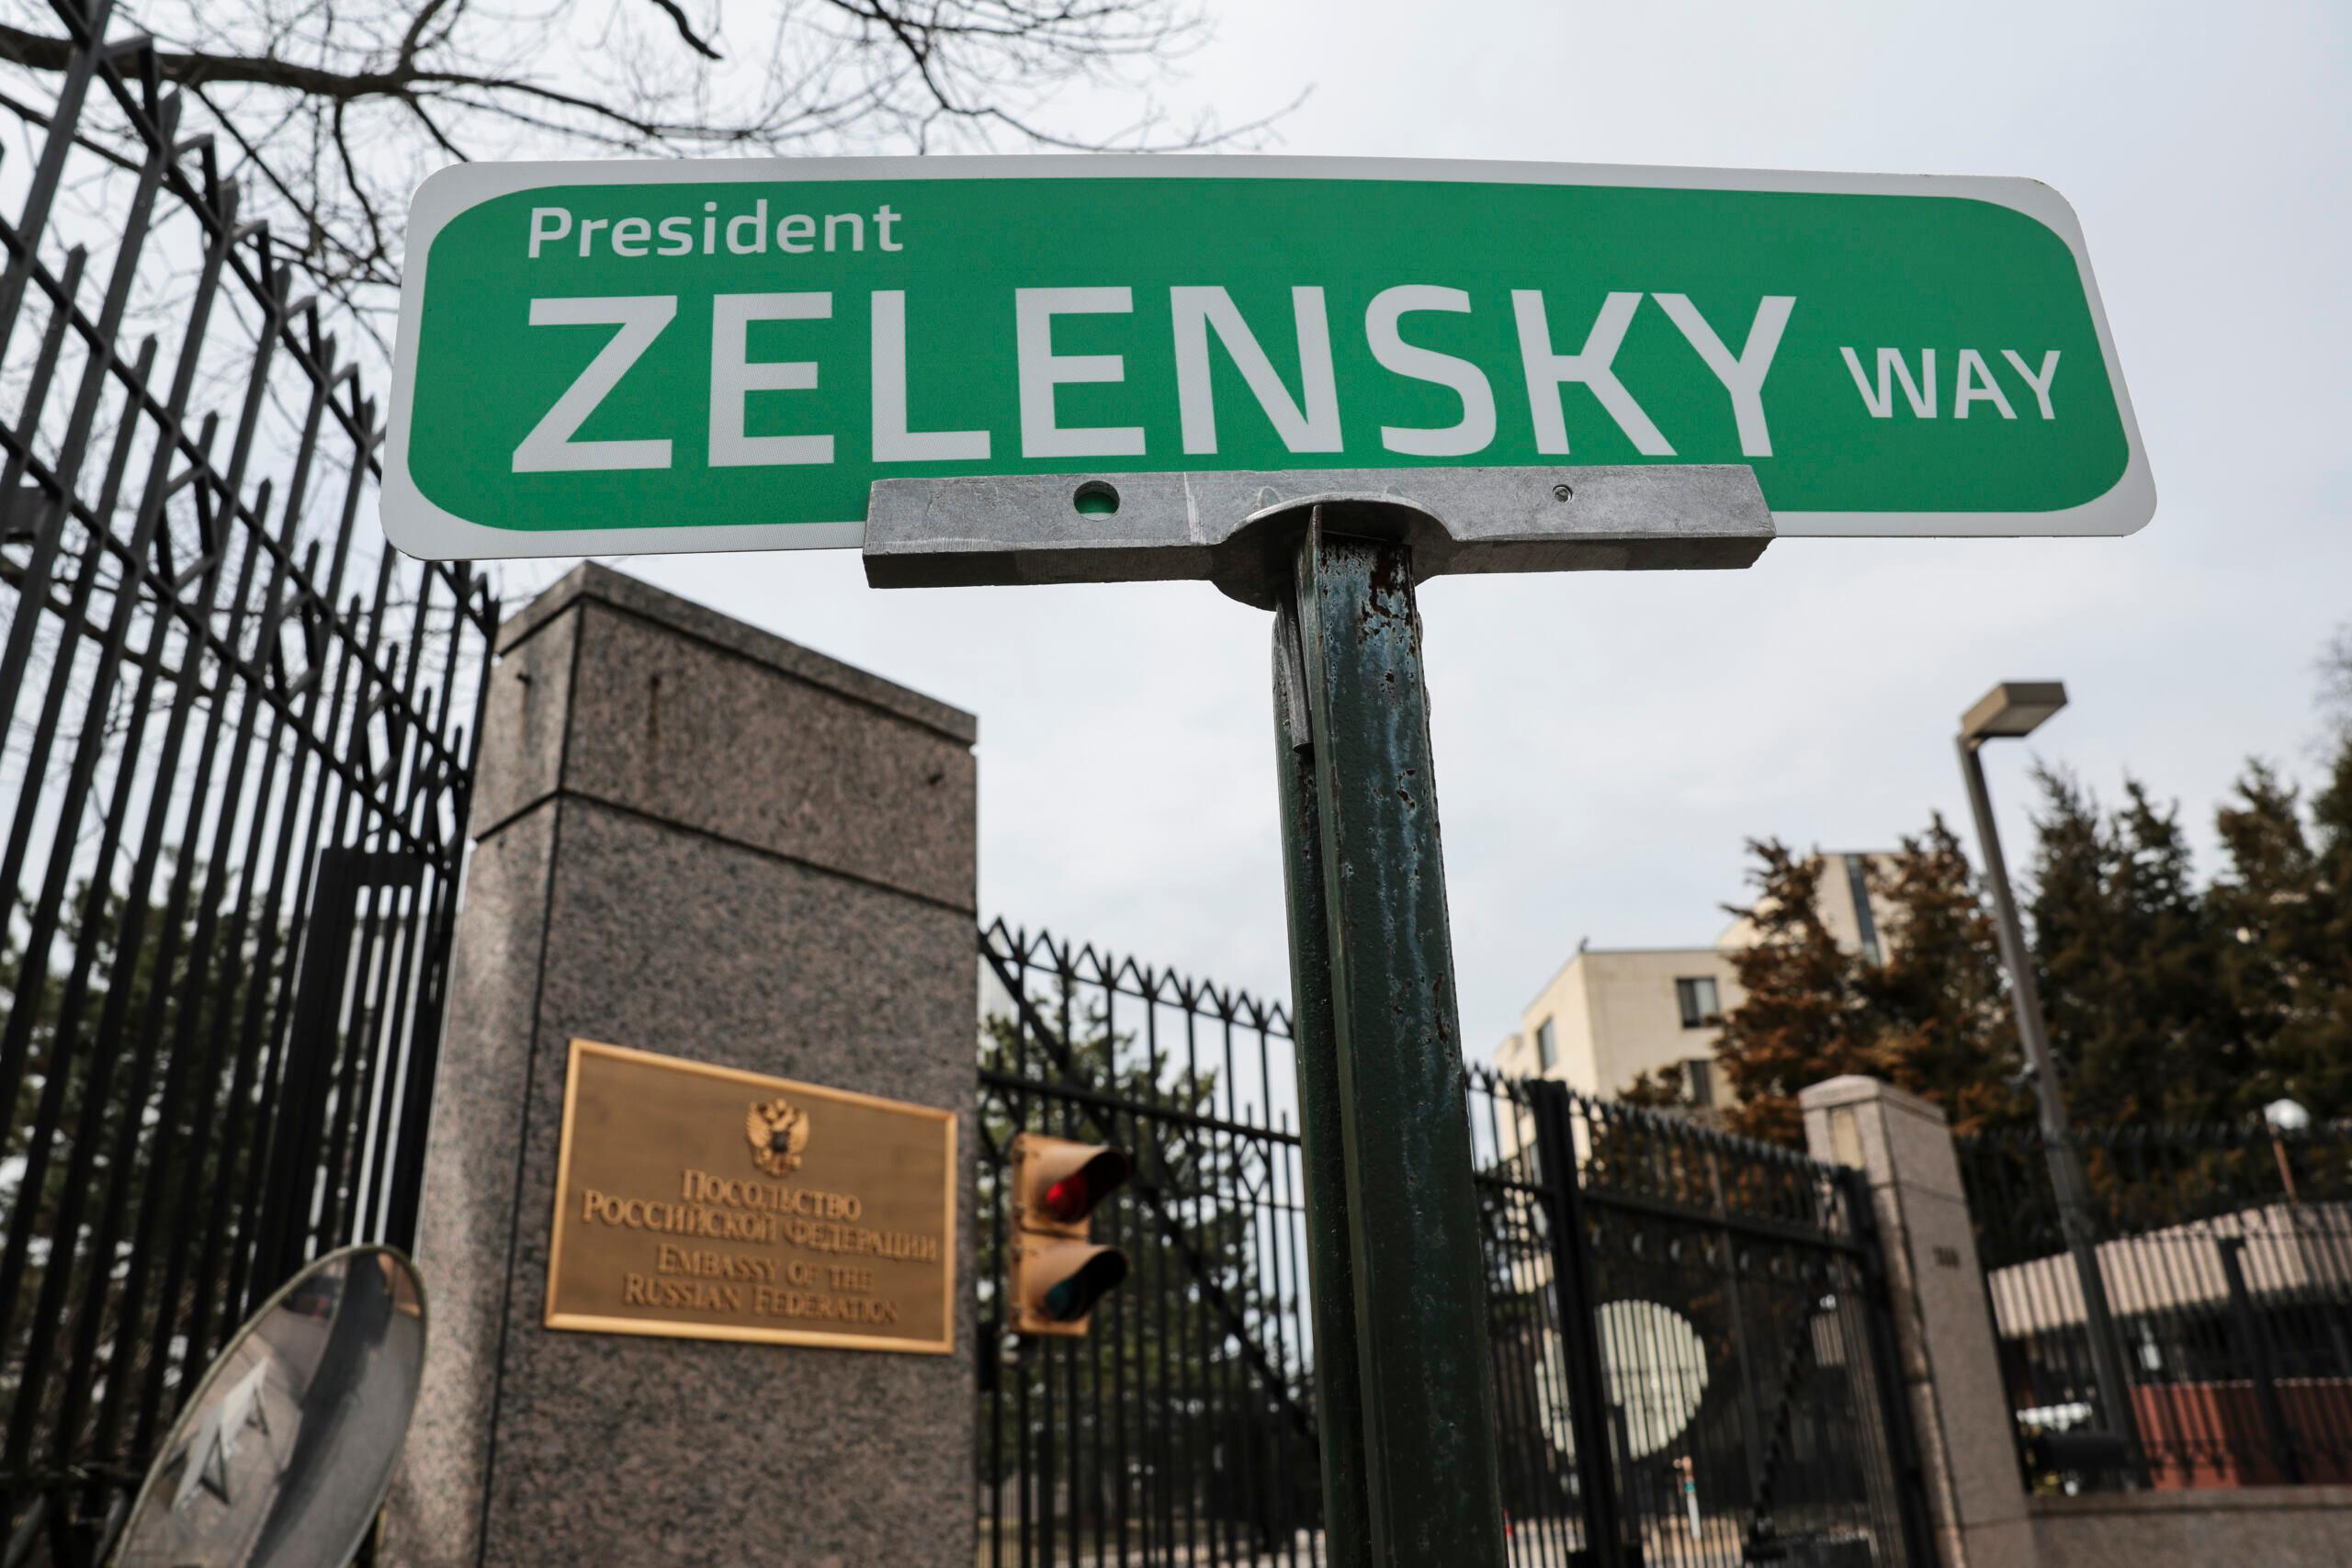 Tablica z nazwą ulicy "President Zelenski Street"